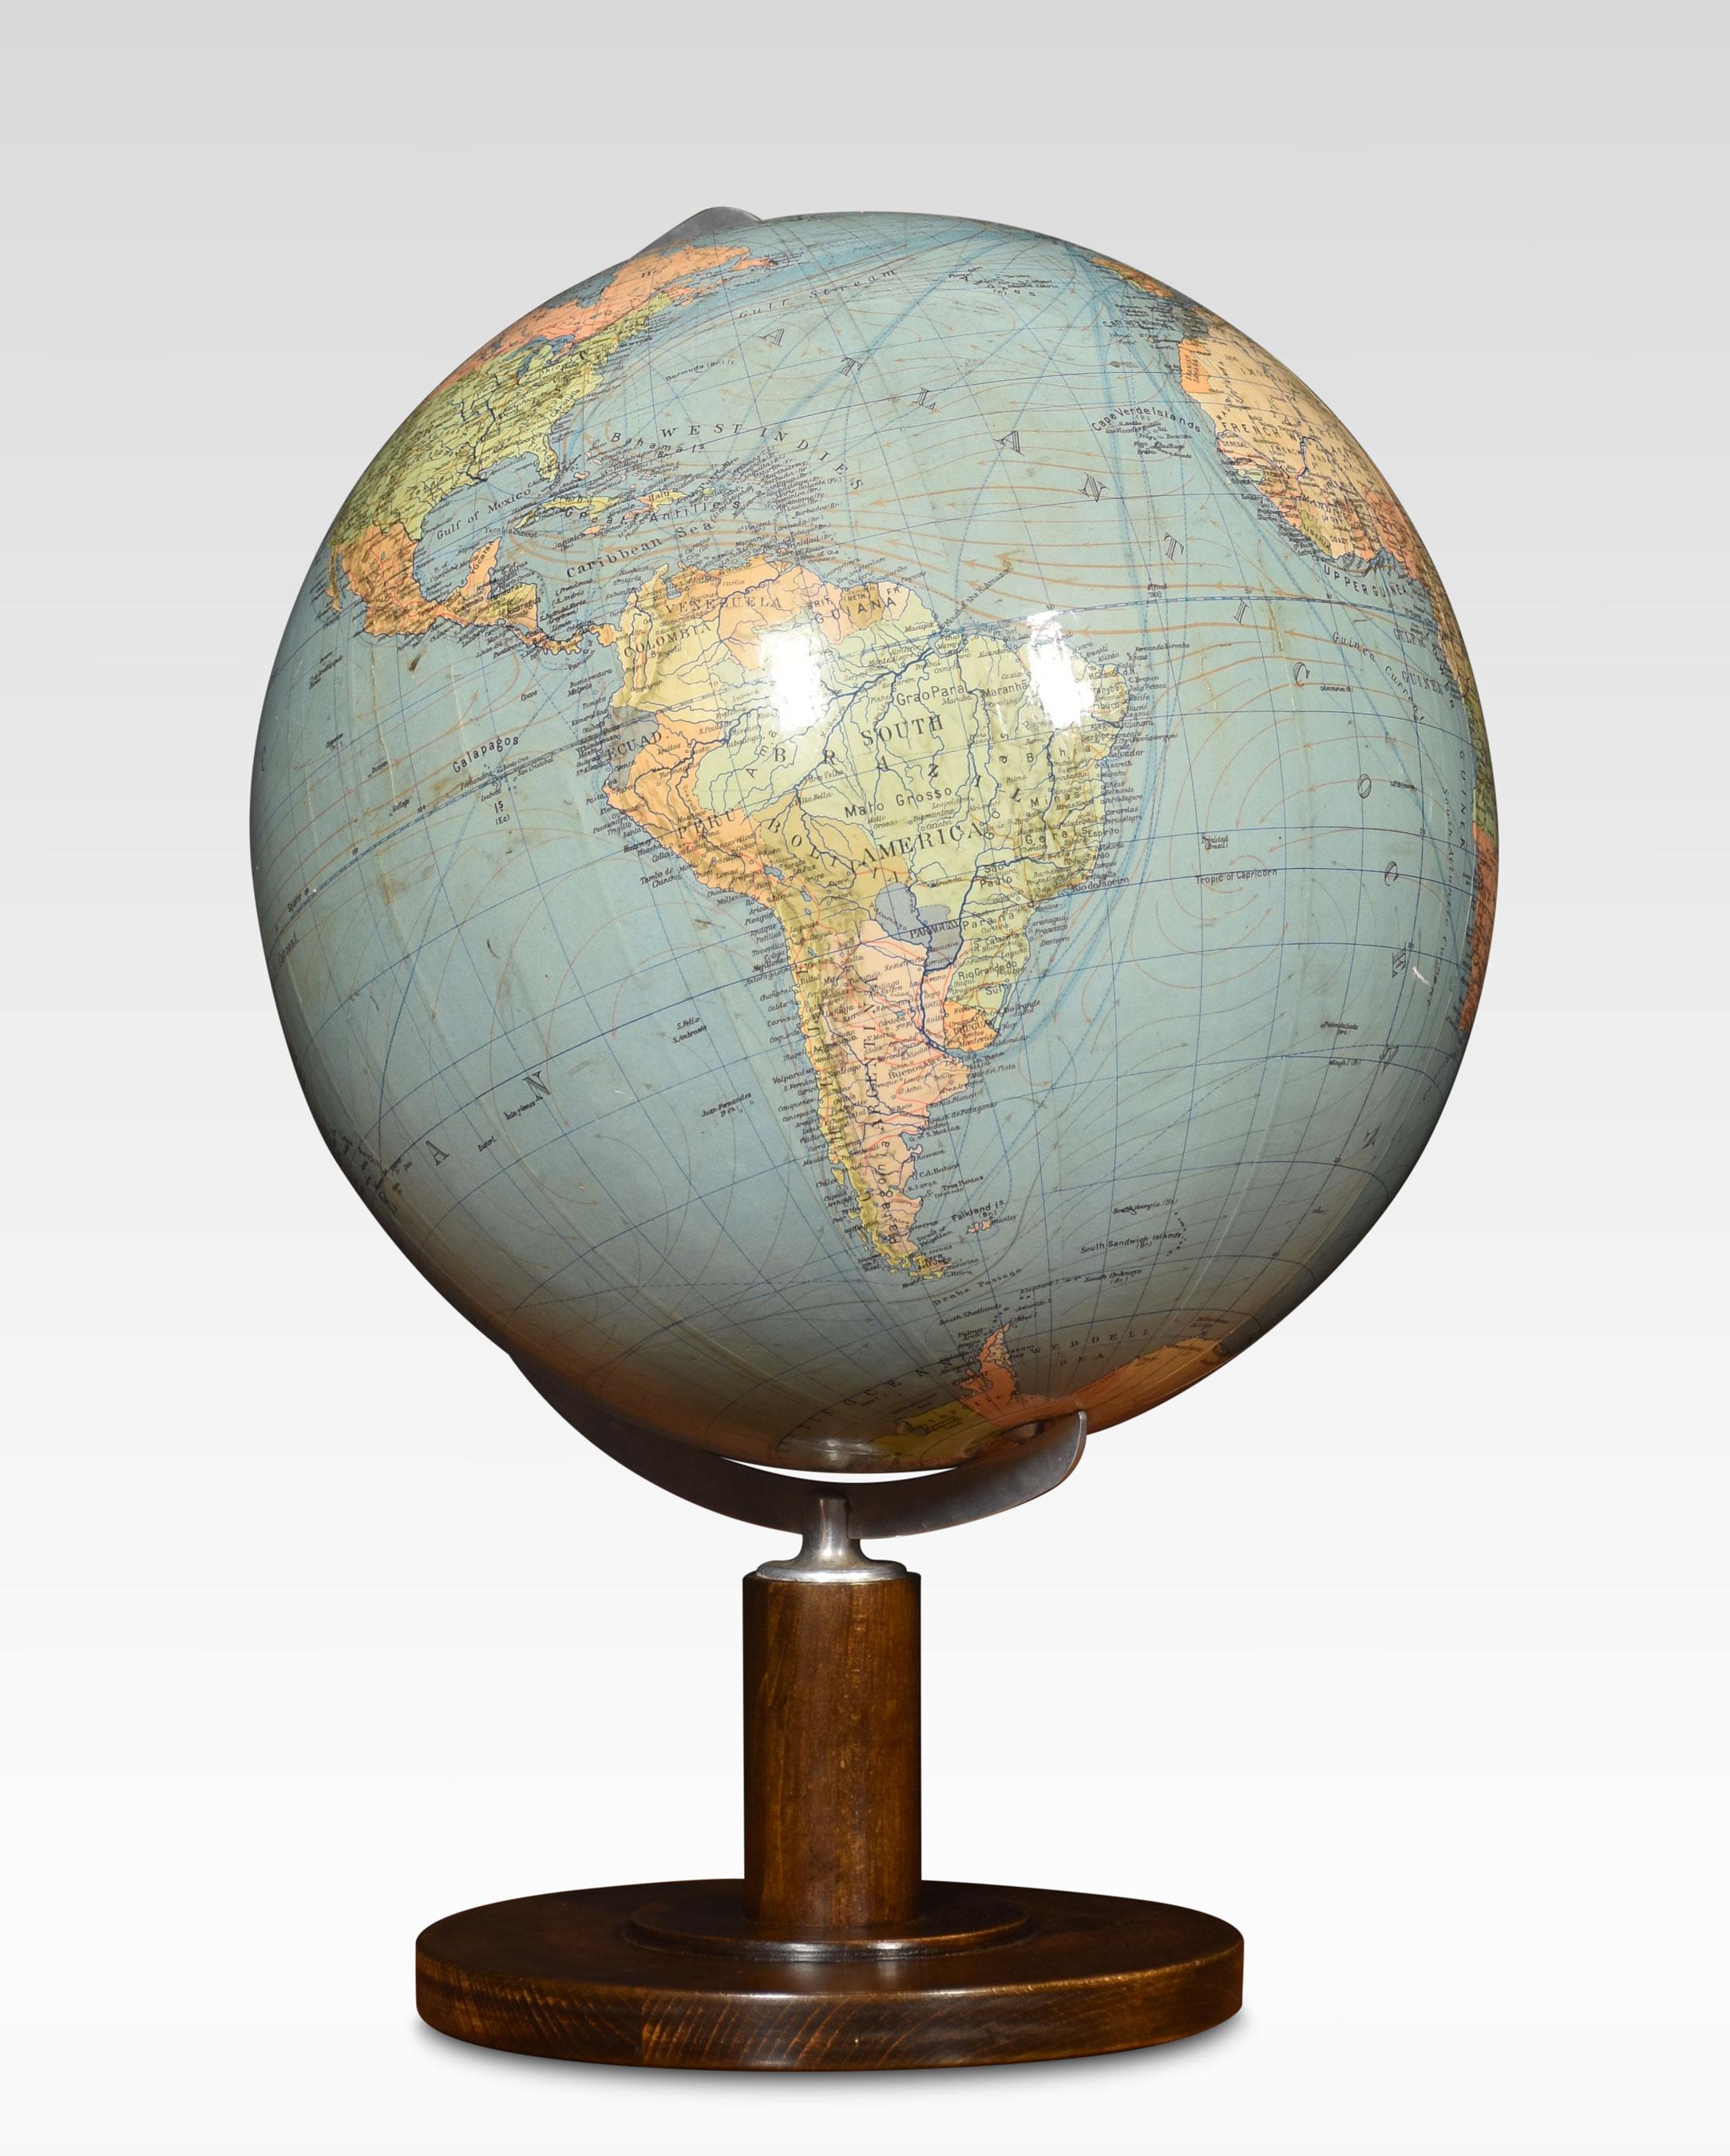 Globe terrestre de Columbus dressé sur une base circulaire.
Dimensions
Hauteur 19.5 pouces
Largeur 14.5 pouces
Profondeur 14.5 Inches.